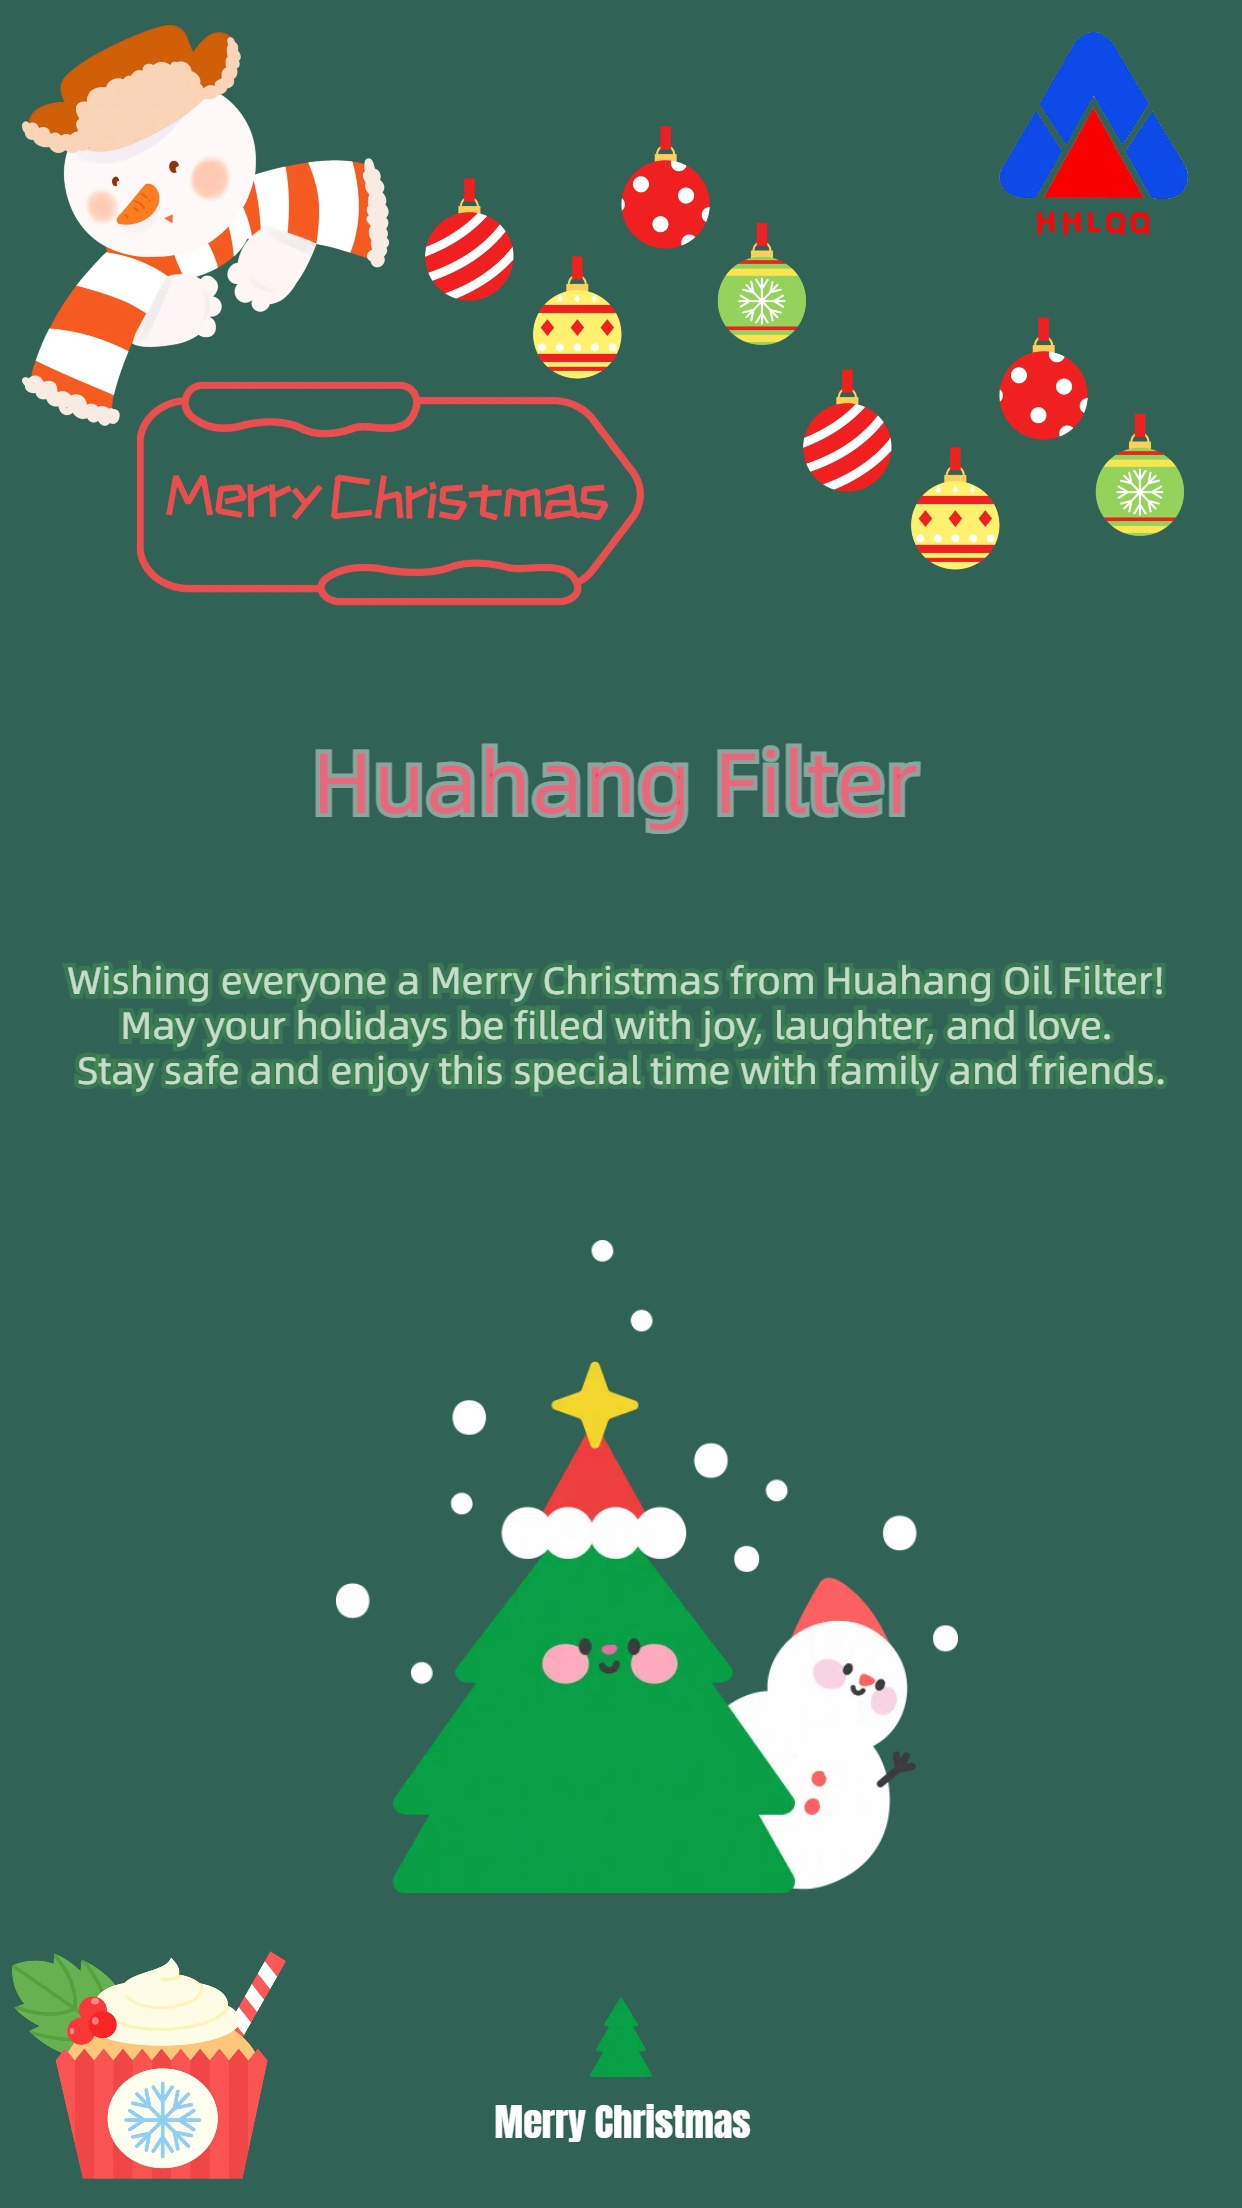 فیلتر هواانگ کریسمس را به همه تبریک می گوید